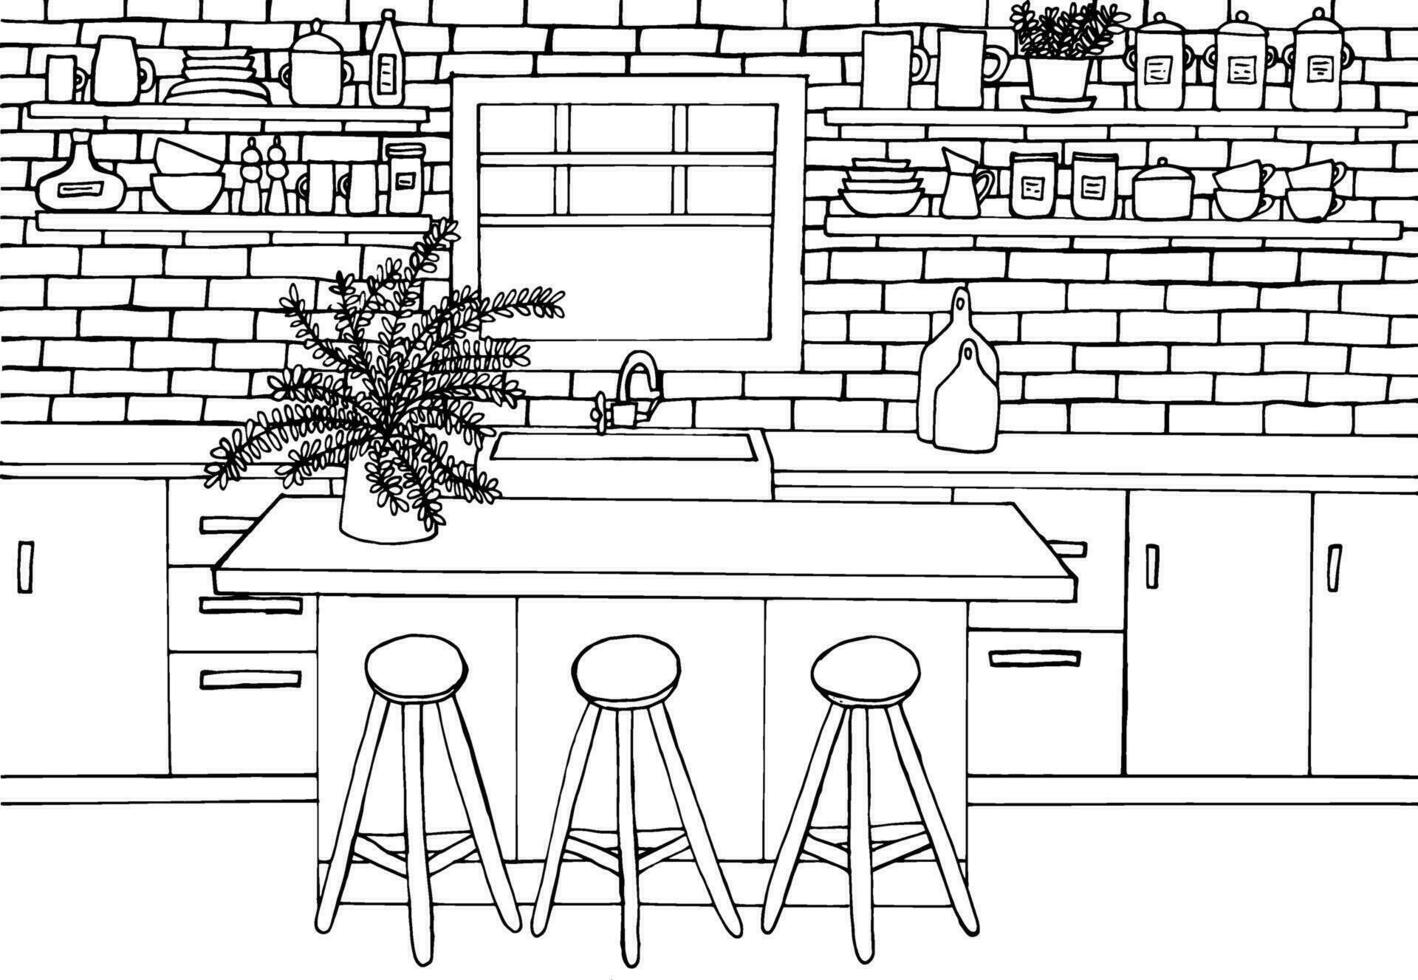 keuken interieur kleur bladzijde. hand- getrokken keuken meubilair kleuren. ontwerp voor kinderen en volwassenen. dining tafel, keuken eiland, bar stoelen, palm boom, venster, steen muur, Koken gebruiksvoorwerpen, kopjes. vector